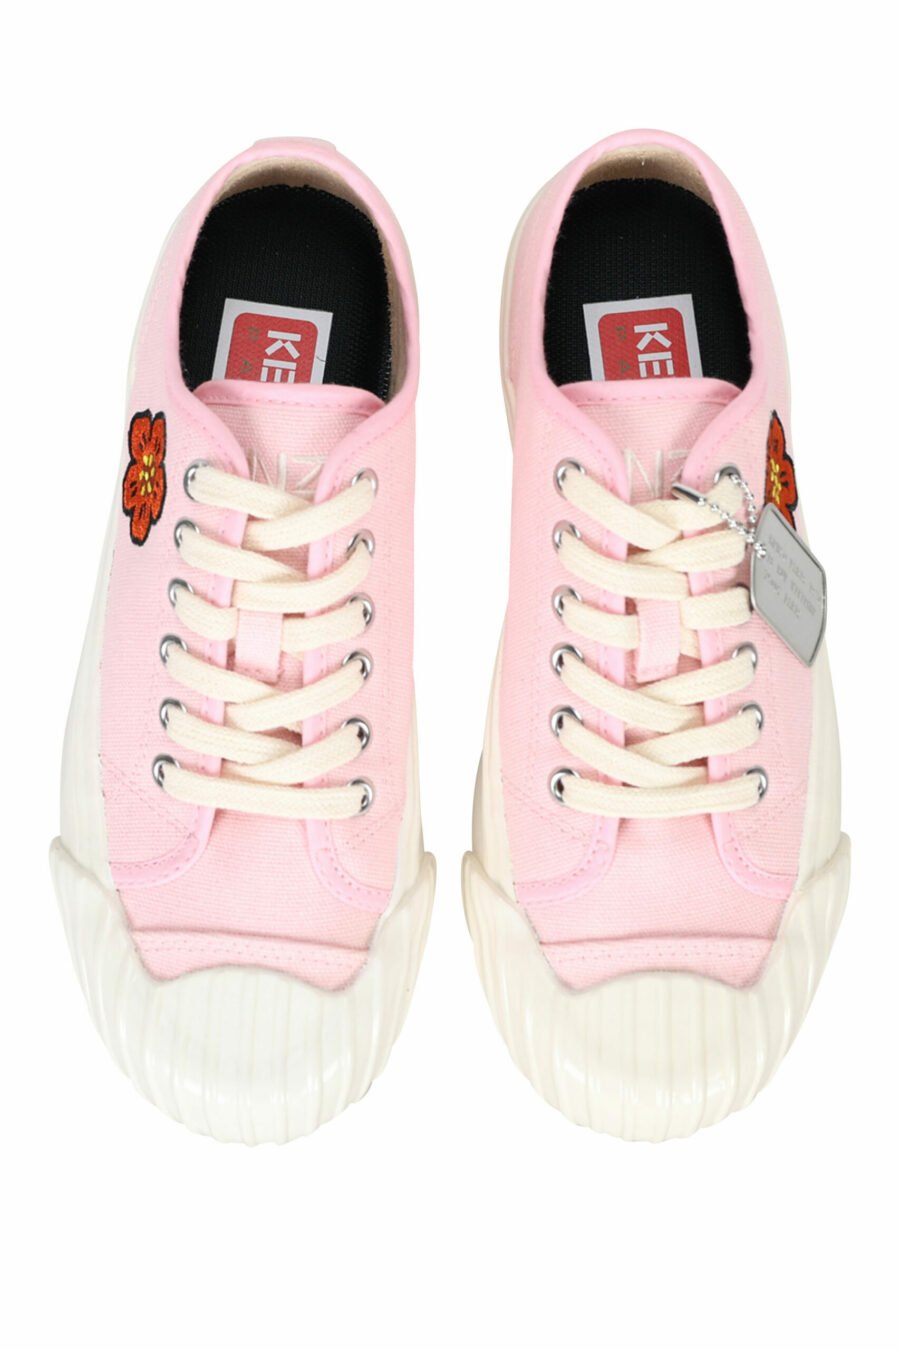 Zapatillas rosa "kenzo school" con logo "boke flower" - 3612230484559 4 scaled